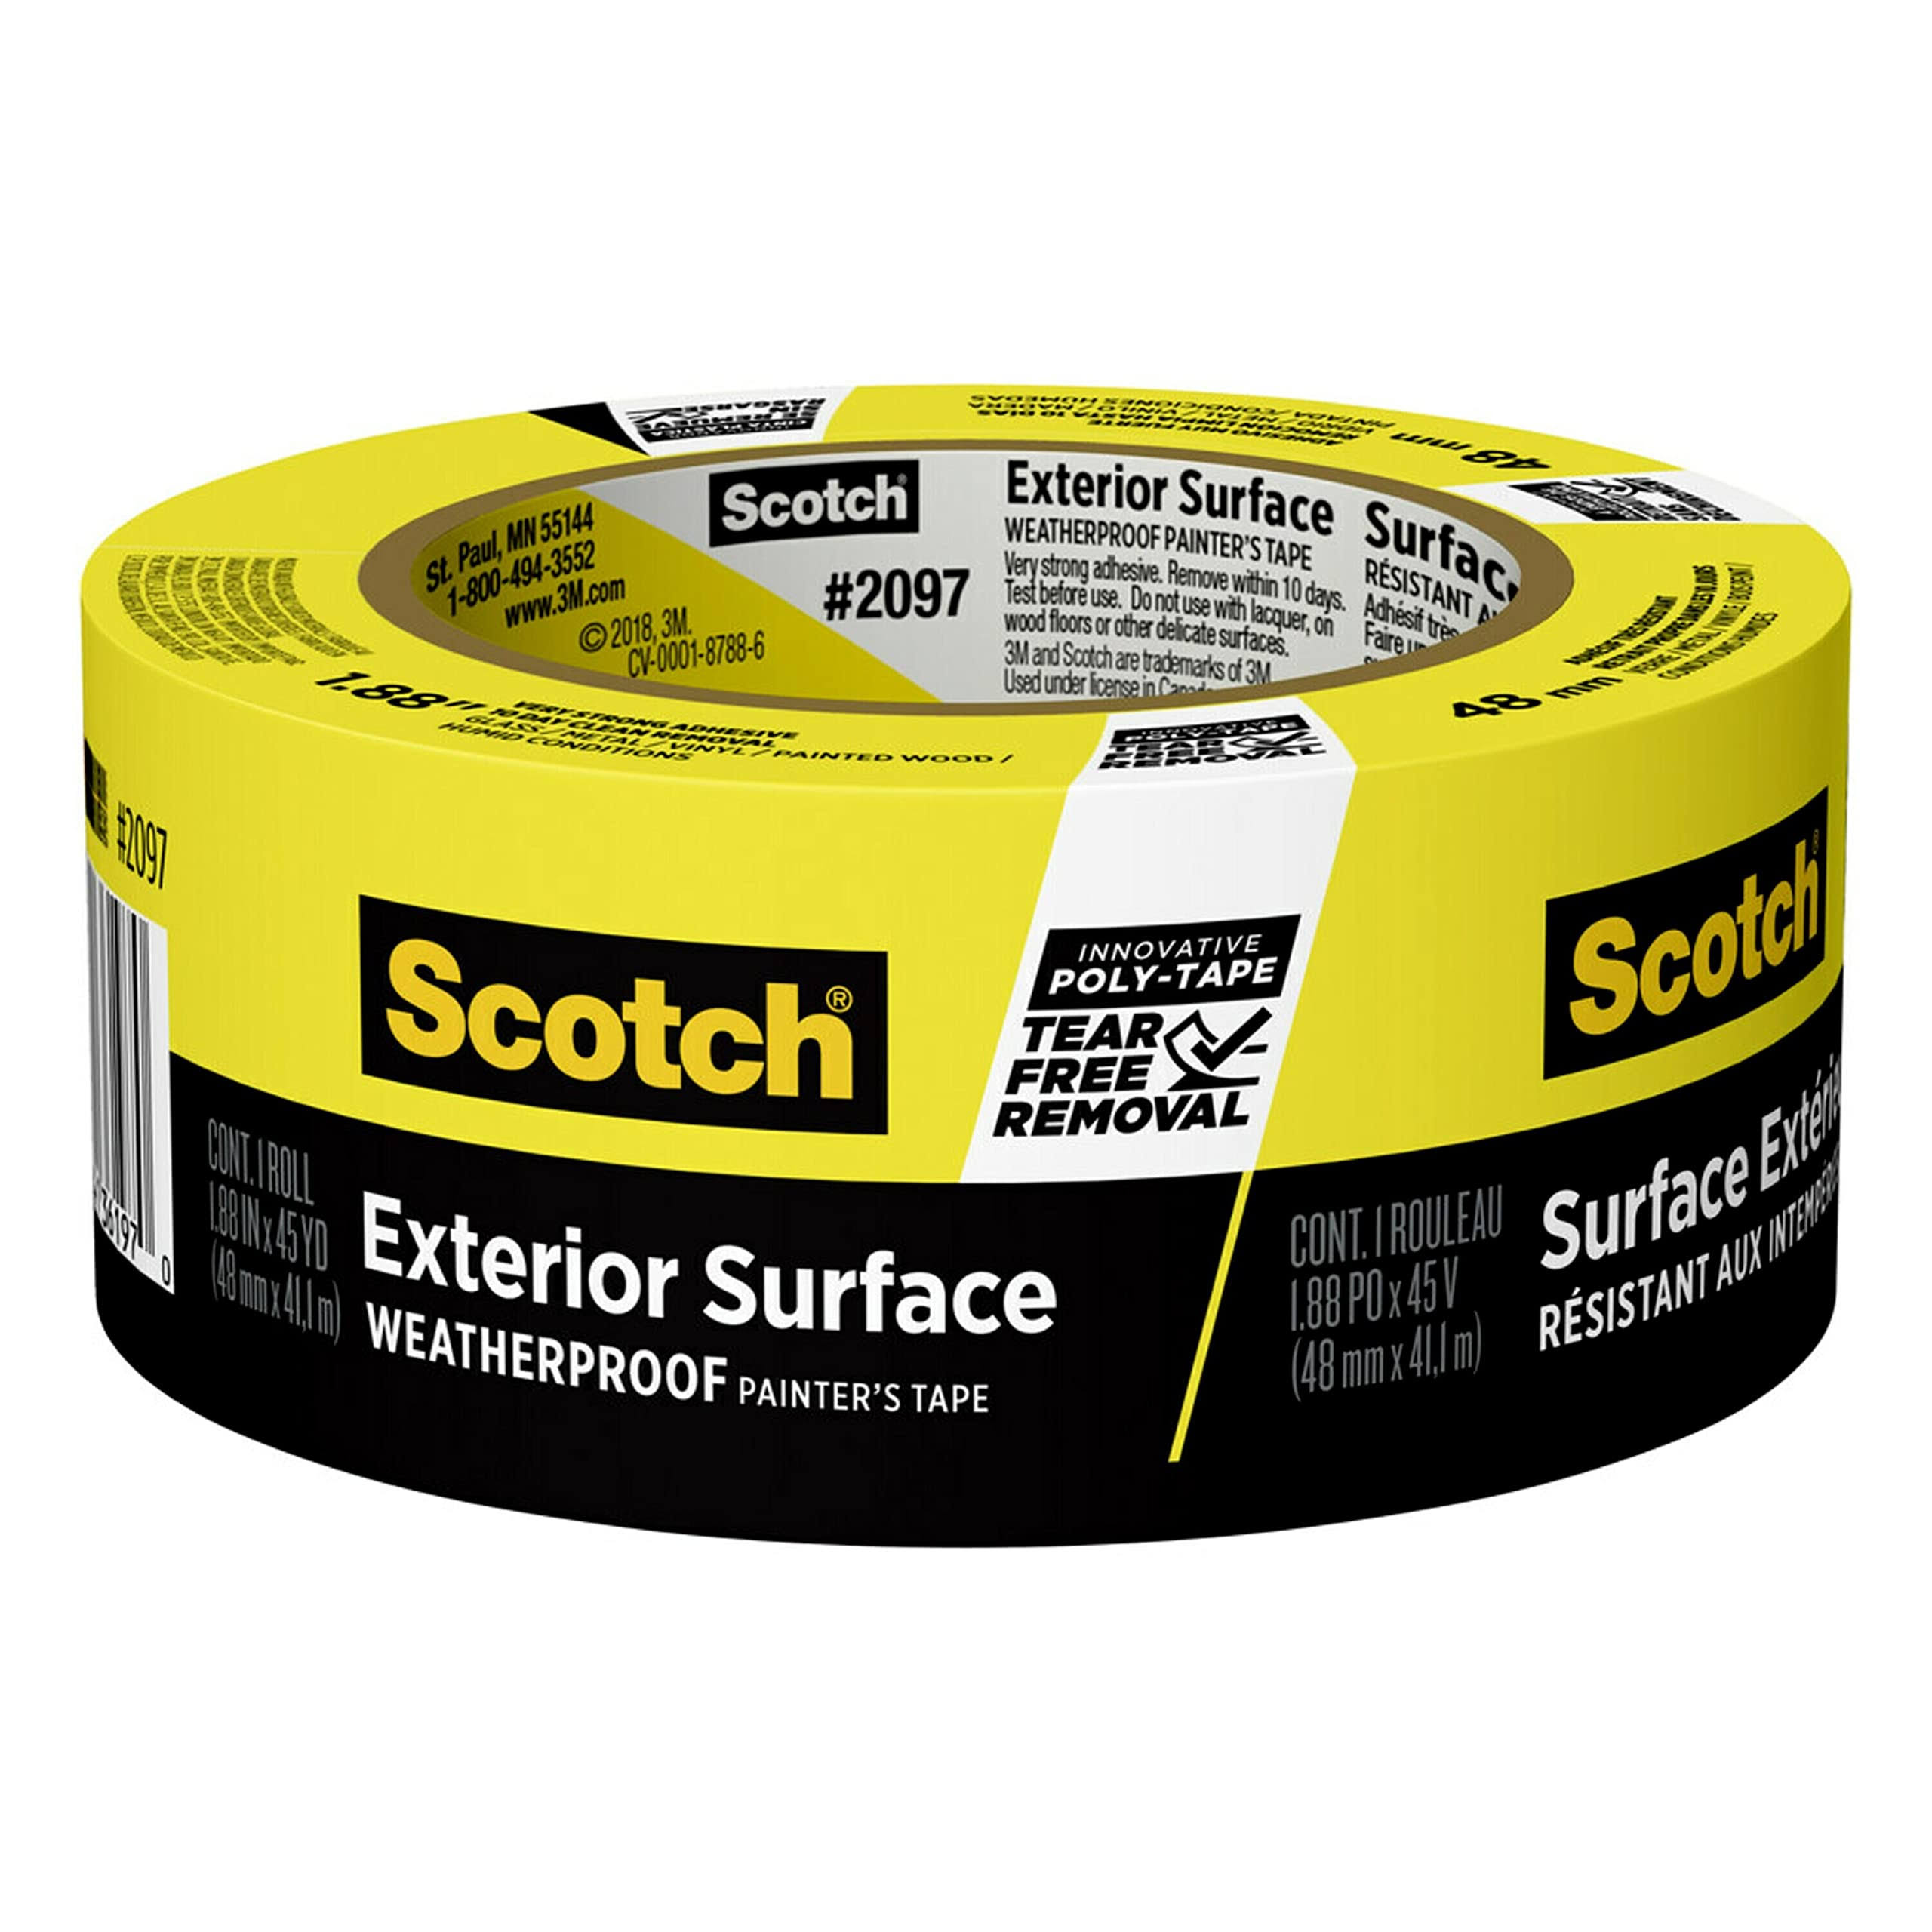 3M ScotchBlue Exterior Paint Tape